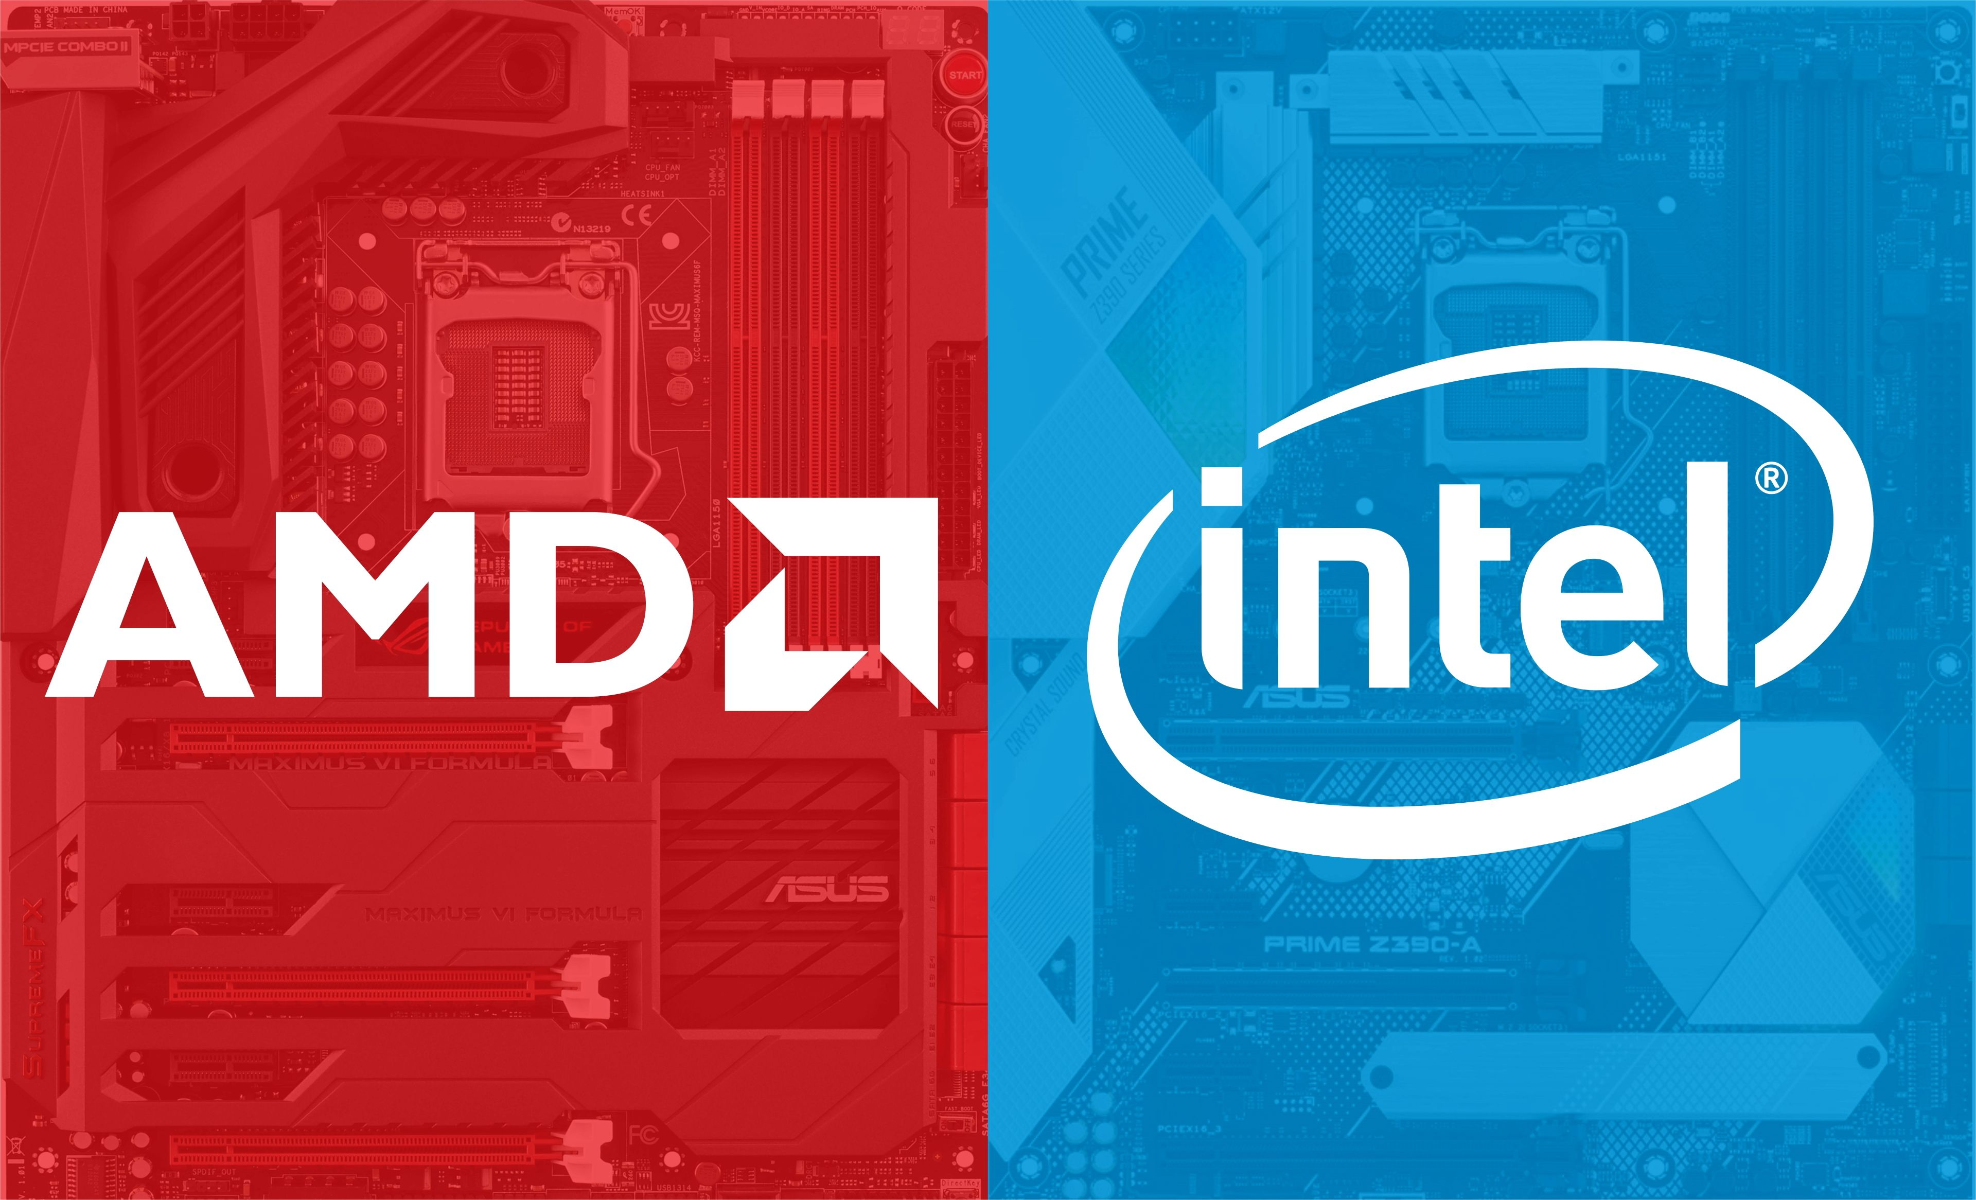 Kina forbyr bruk av Intel- og AMD-prosessorer i offentlige datamaskiner